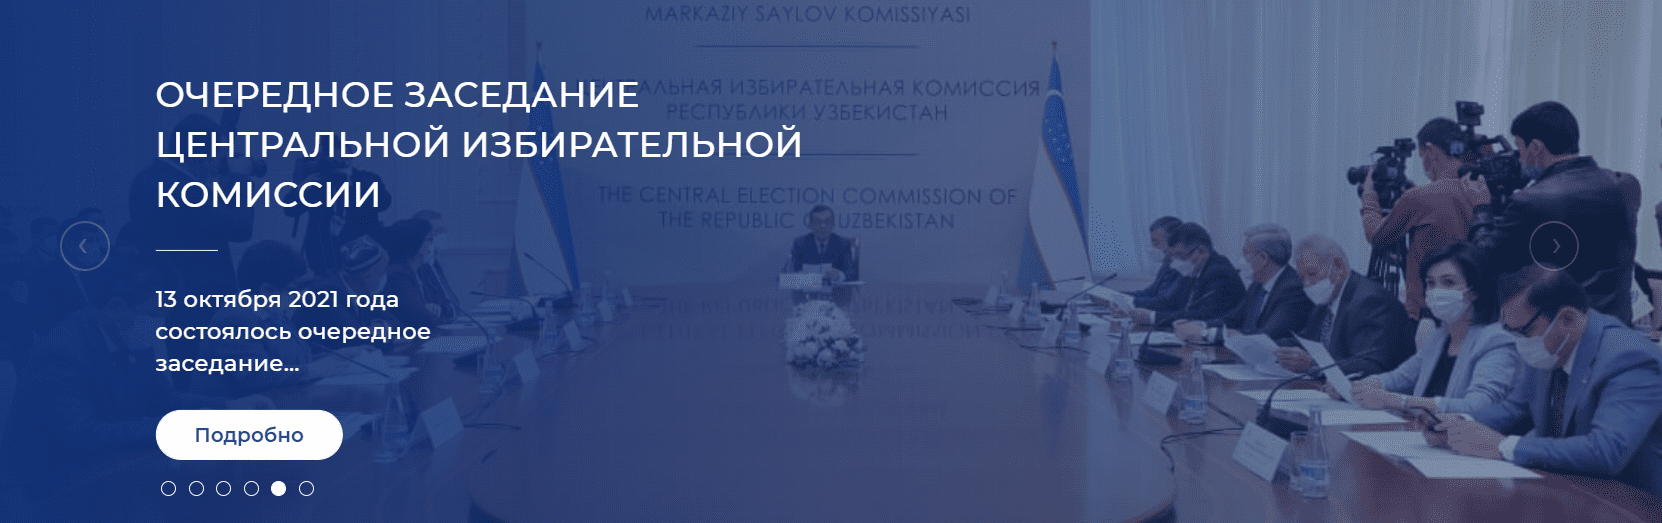 Центральная избирательная комиссия Узбекистана (saylov.uz) ИСУИП